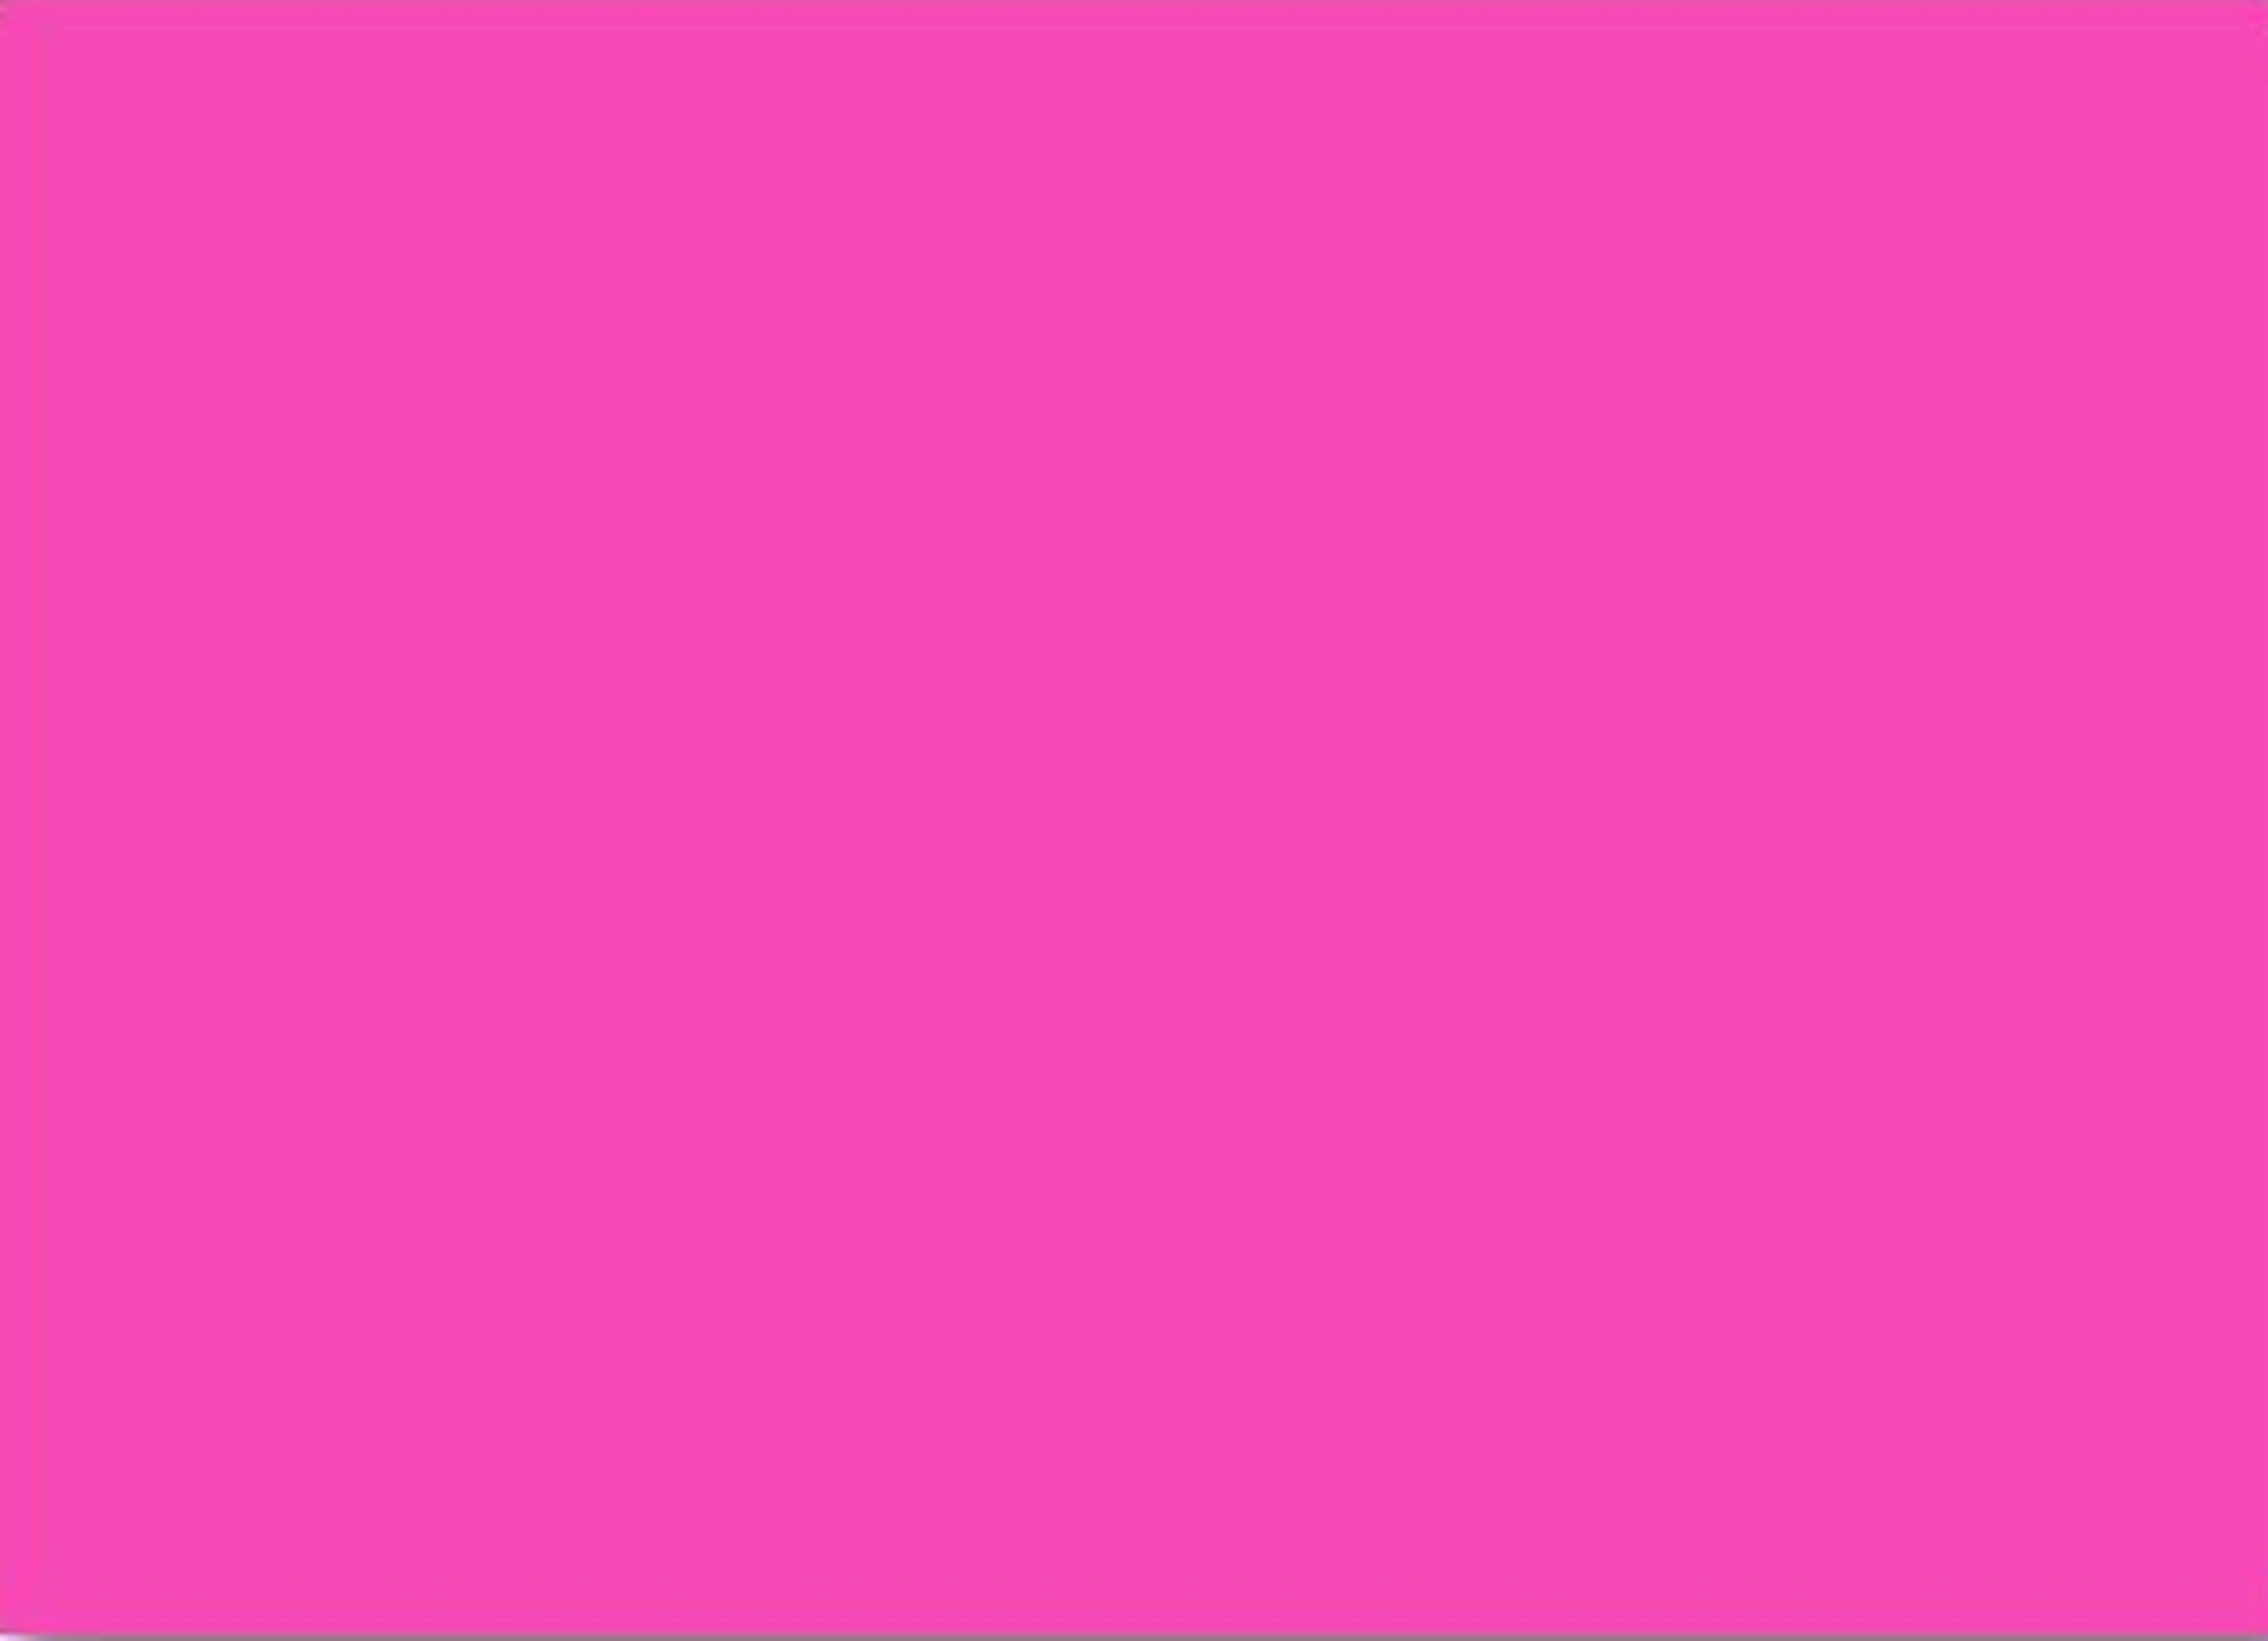 7148x5173 Hình nền màu hồng Tumblr Group 76